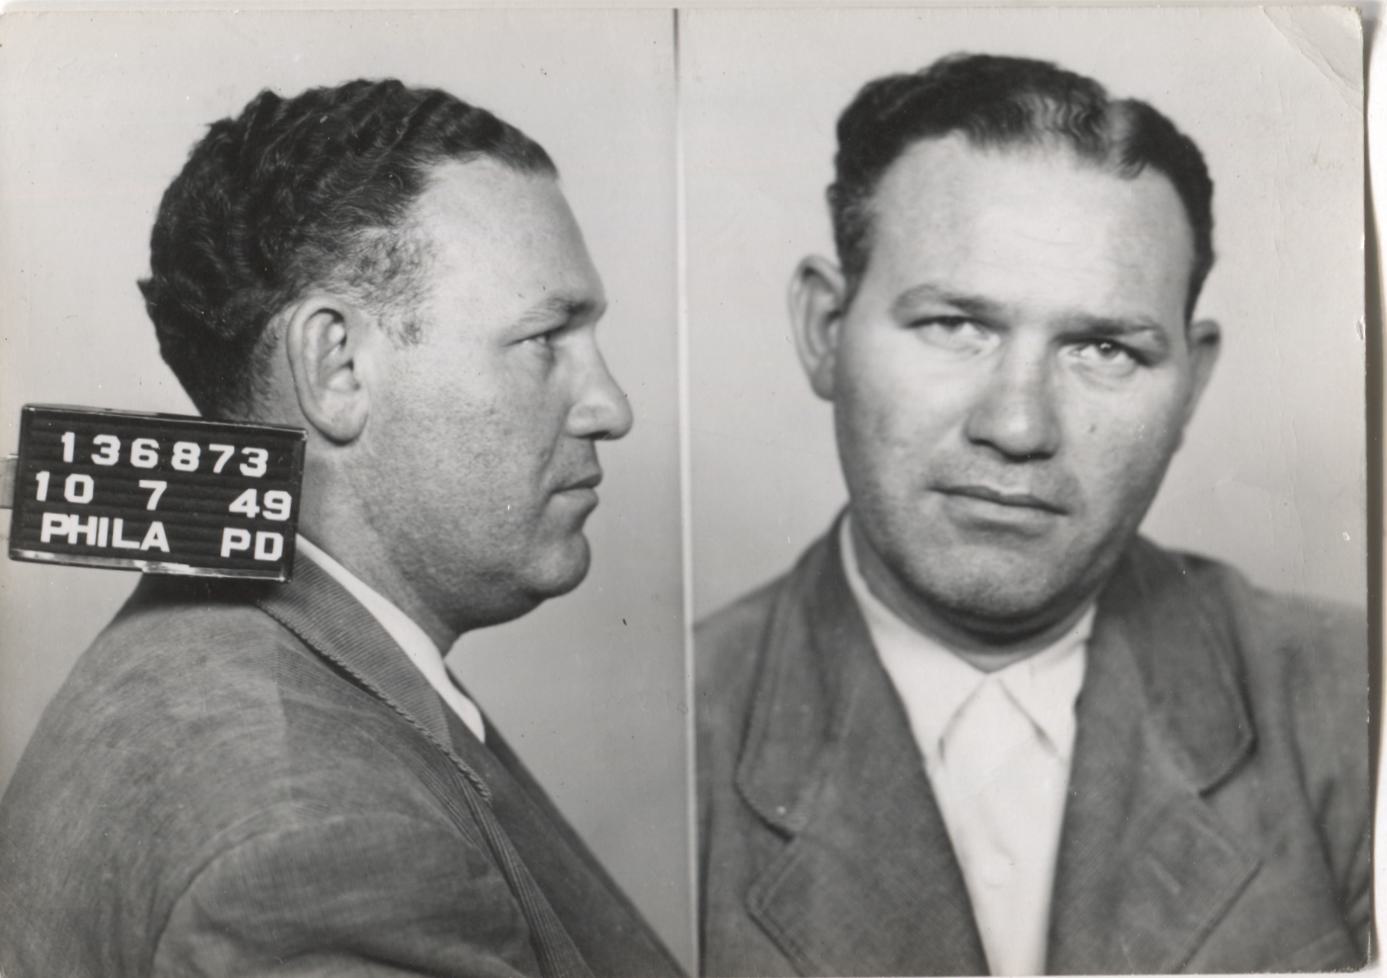 Edward Lavner Mugshot - Arrested on 10/7/1949 for Poolselling